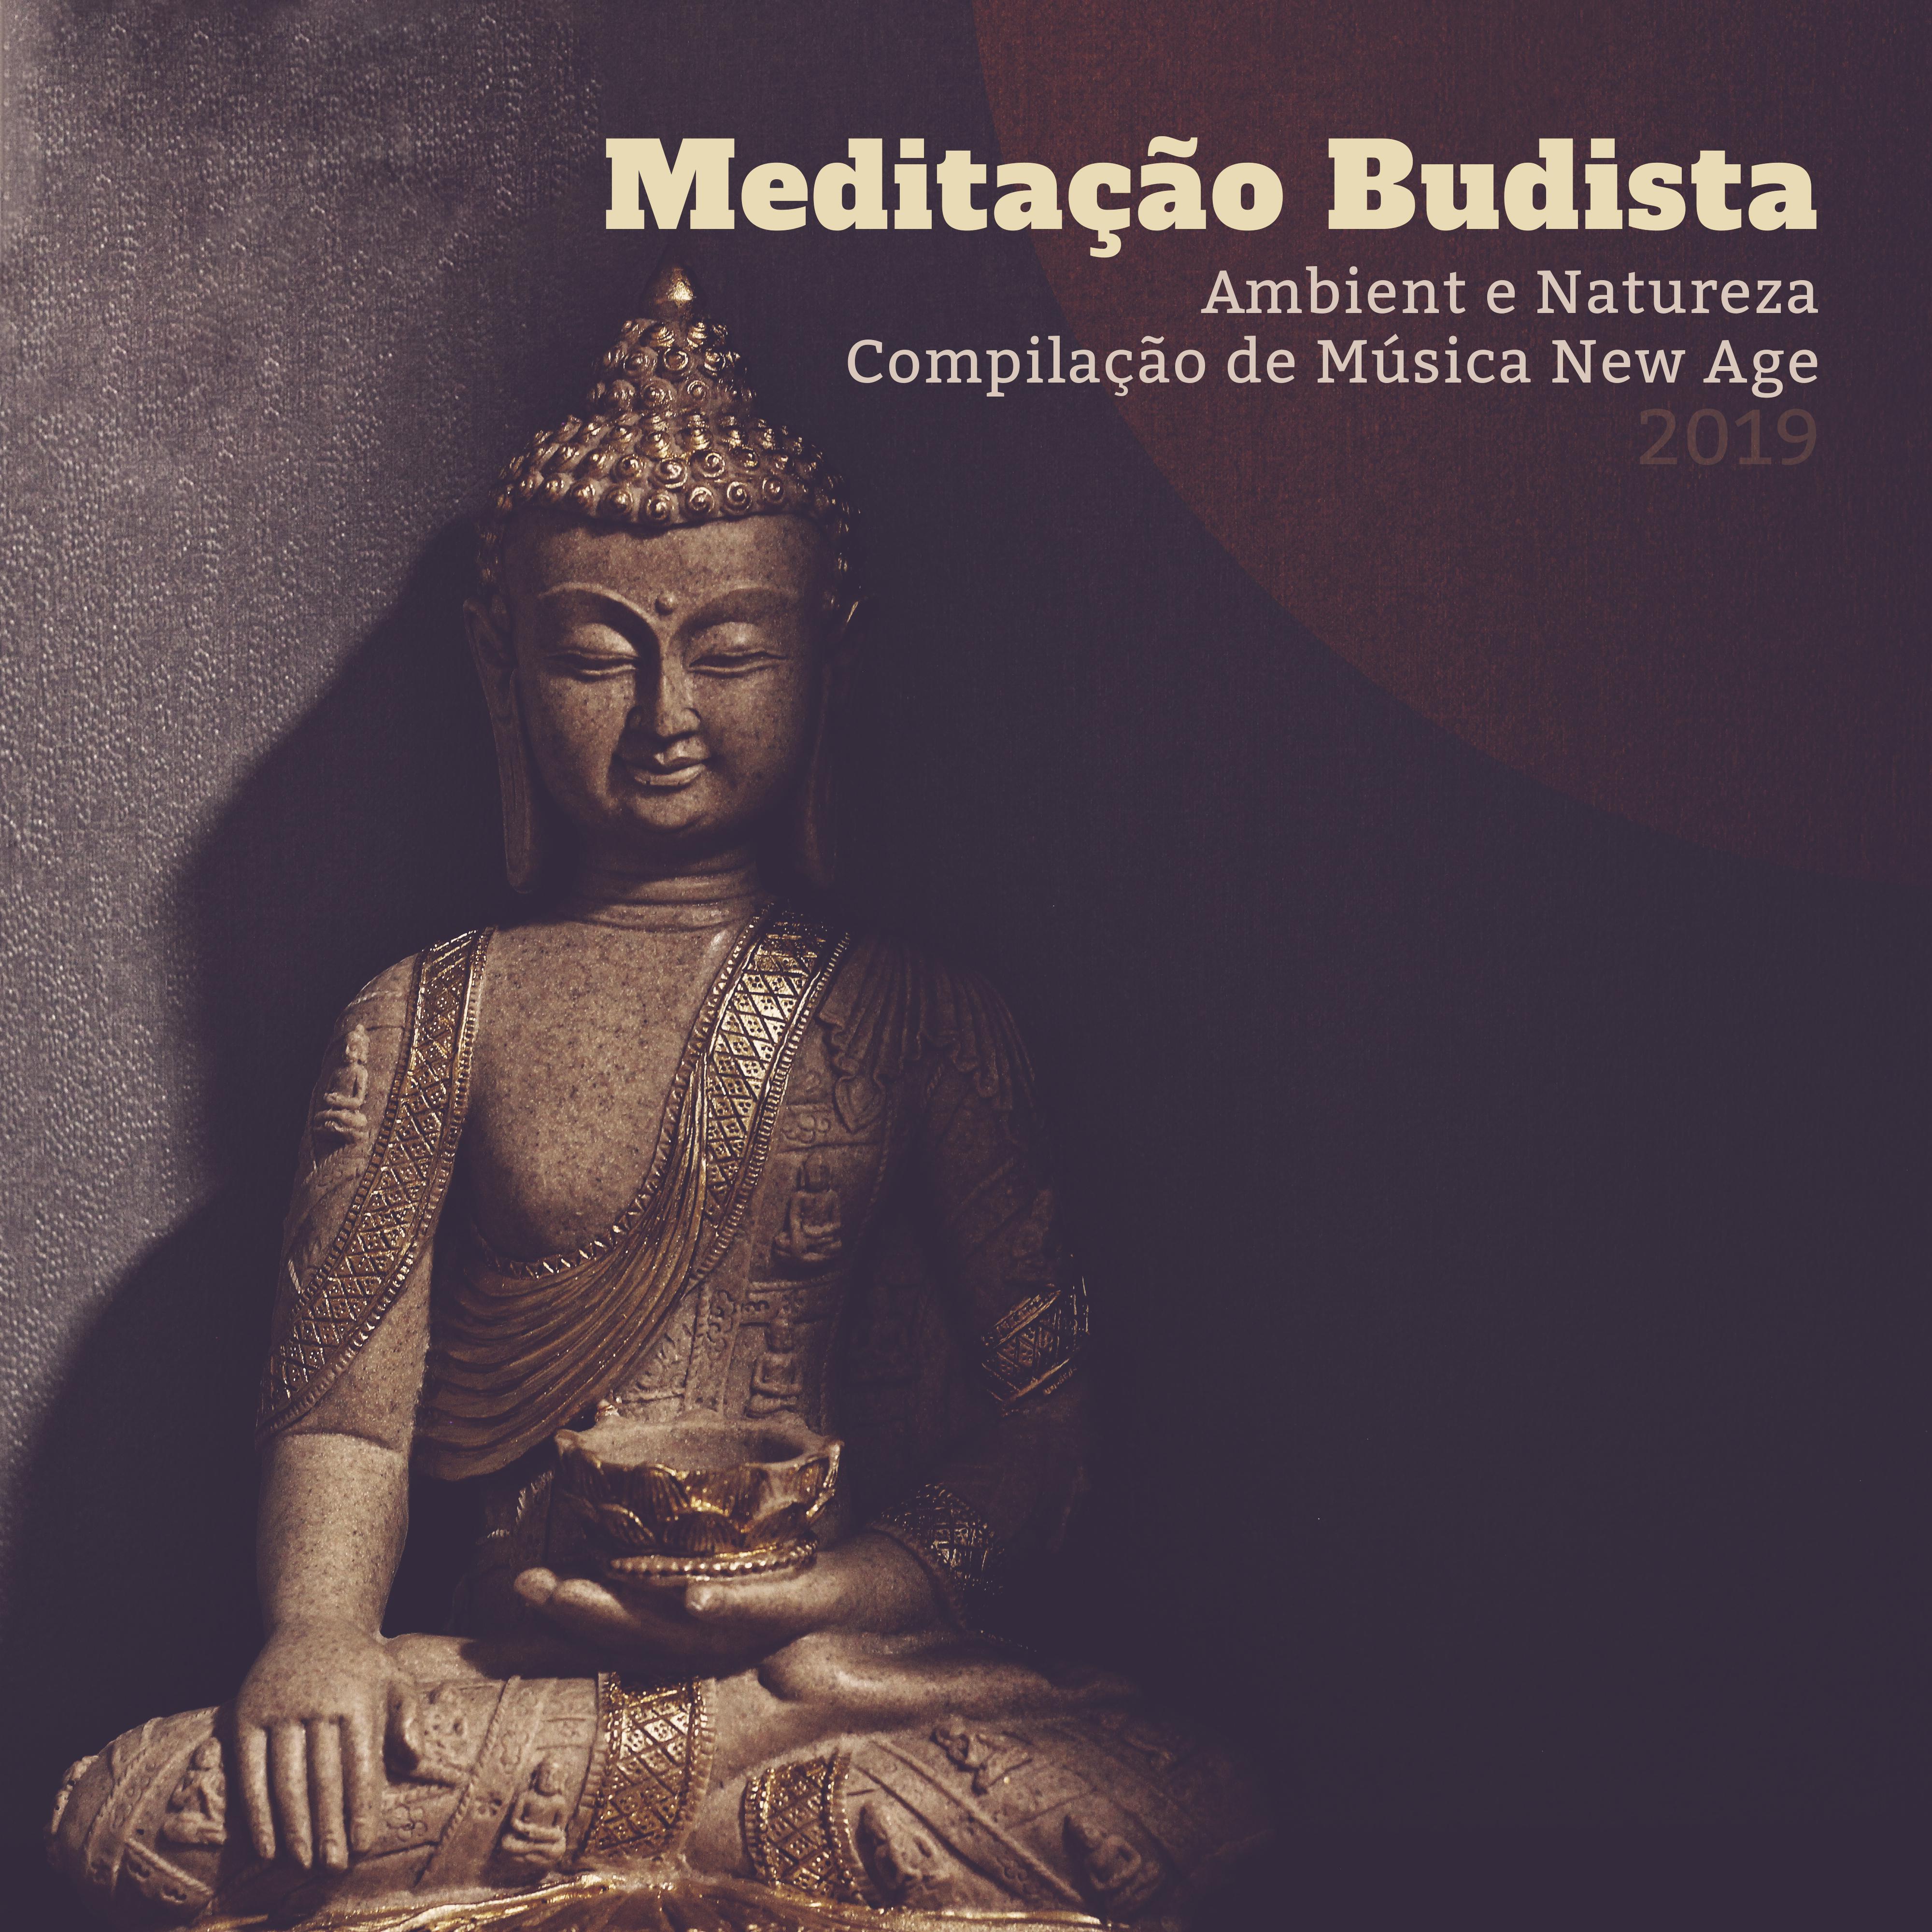 Medita o Budista Ambient e Natureza Compila o de Mu sica New Age 2019